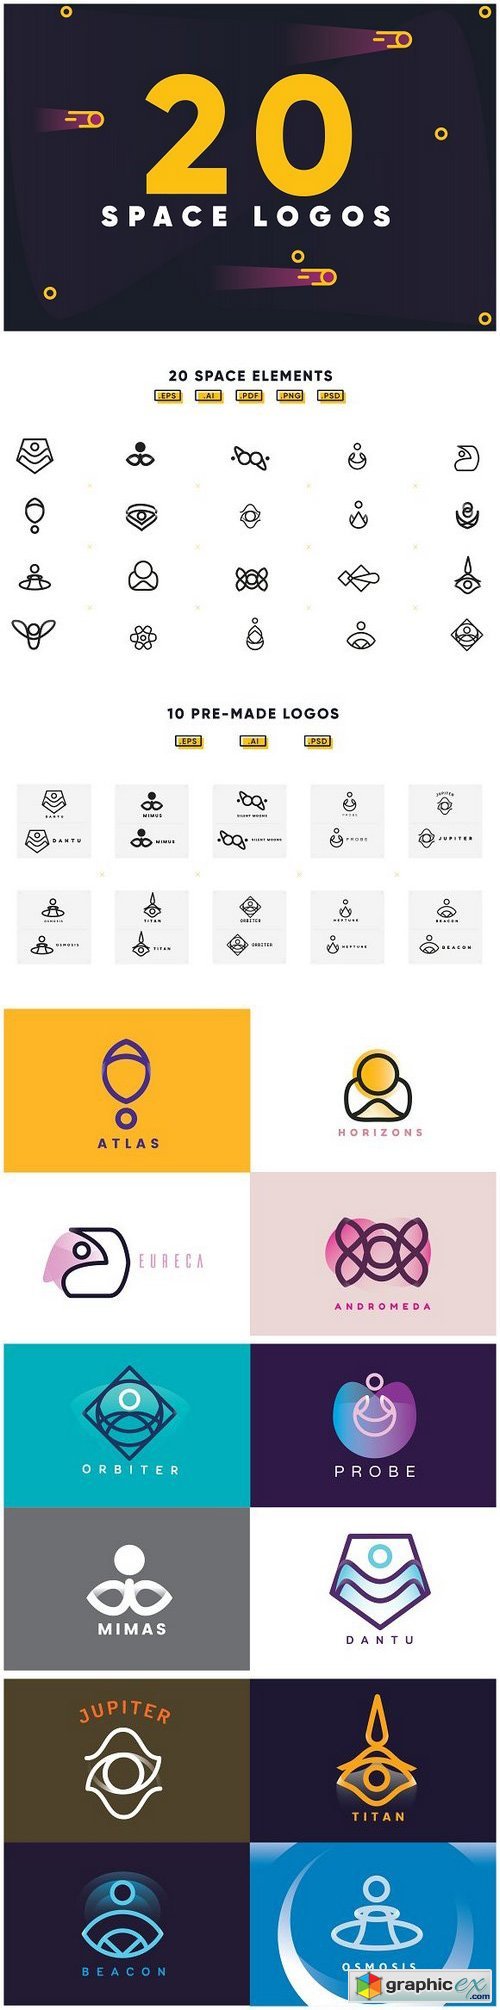 20 Space Logos